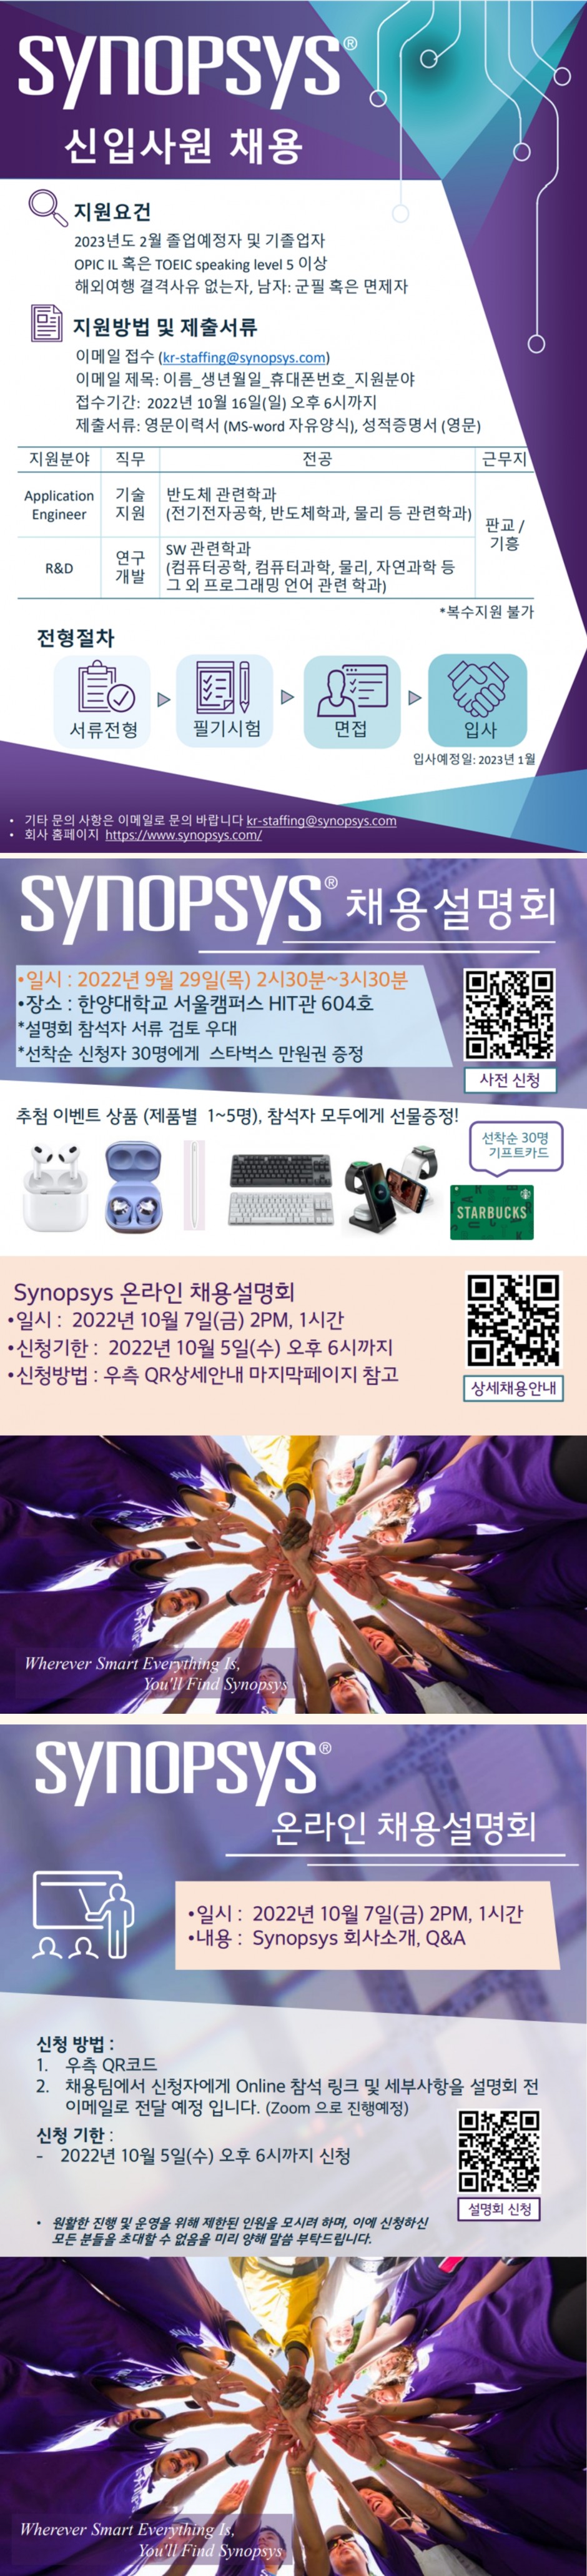 synopsys poster_Hanyang (4)